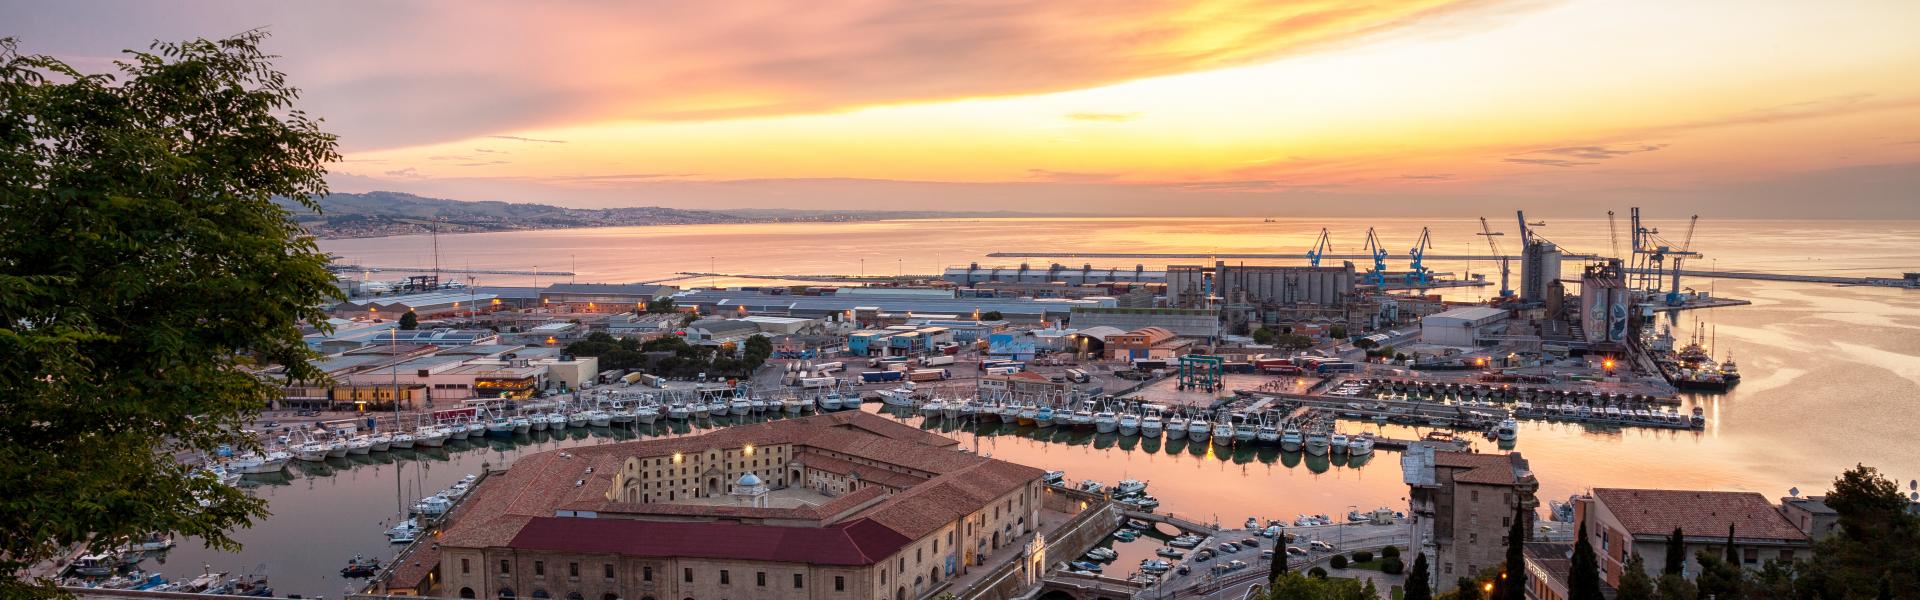 Ancona Scenic View